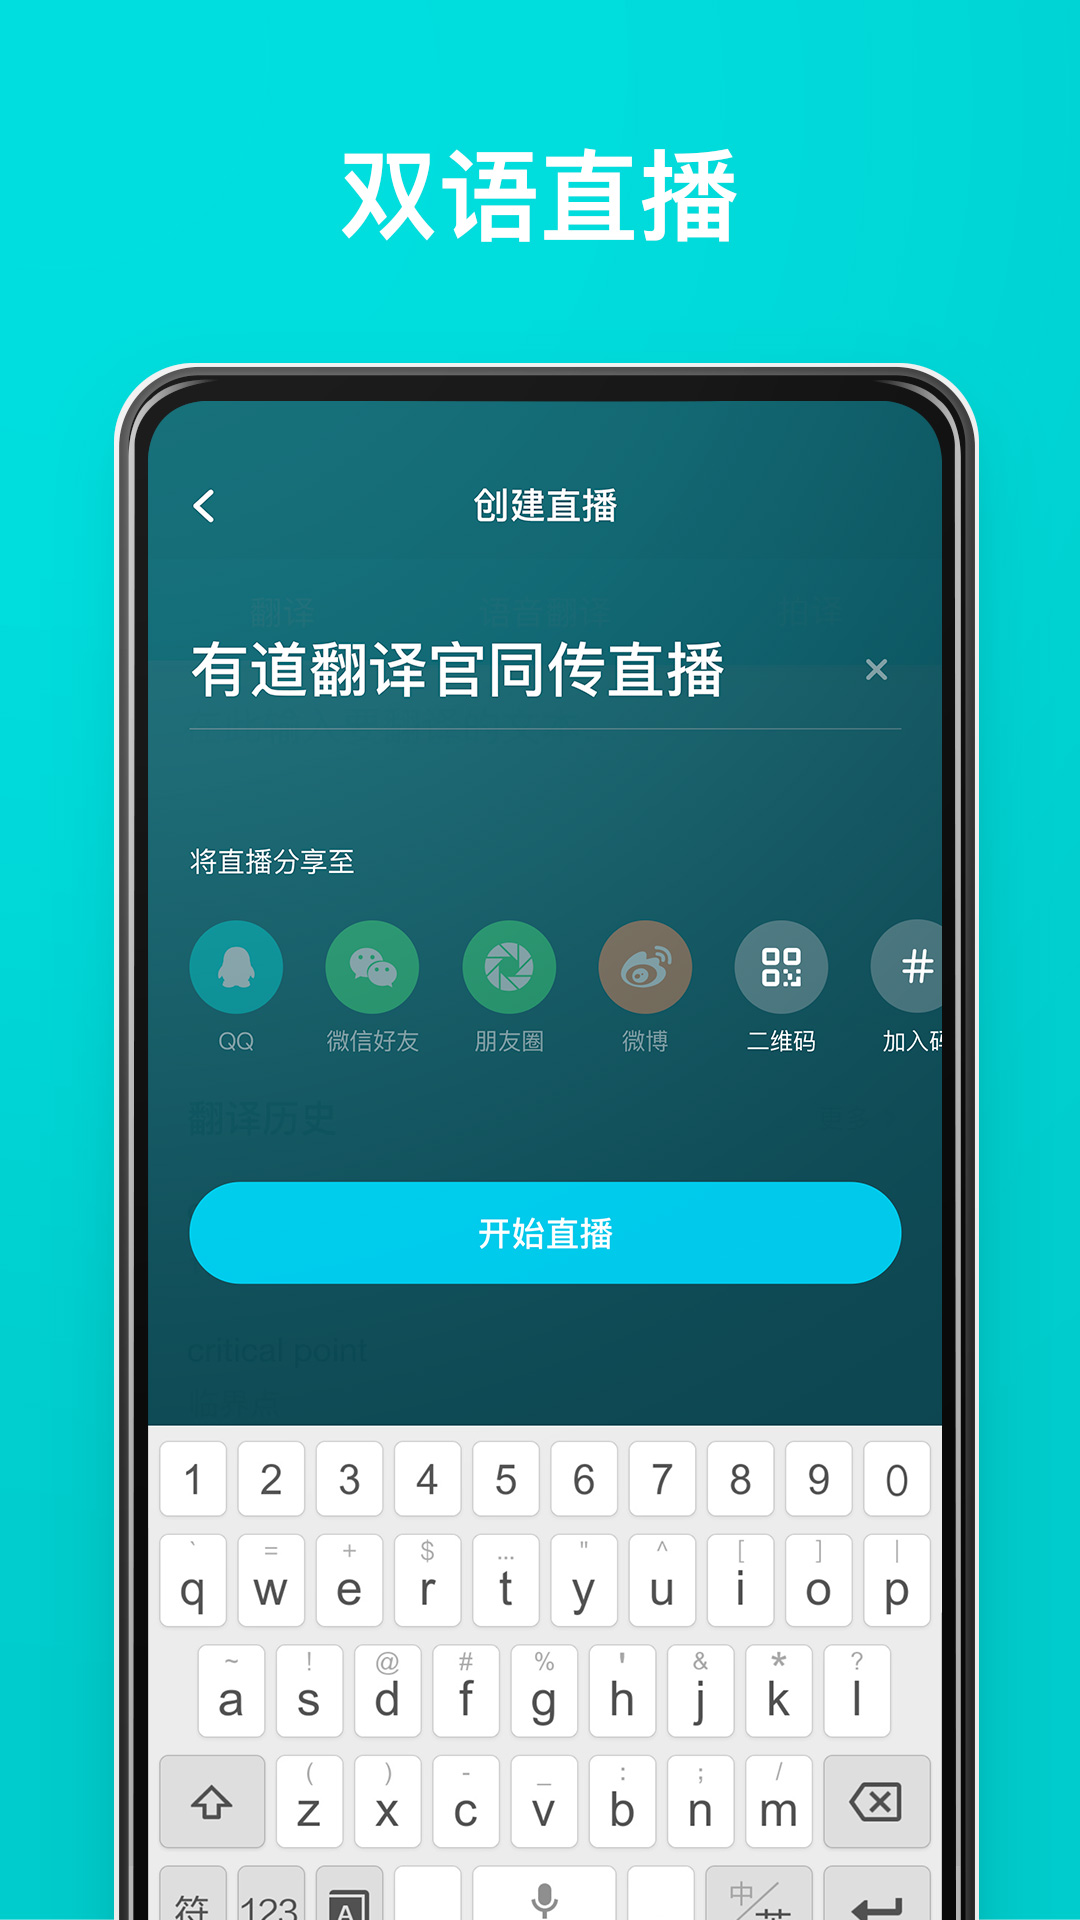 中韩互译翻译app下载,中韩互译翻译软件下载app v2.0.2 - 浏览器家园